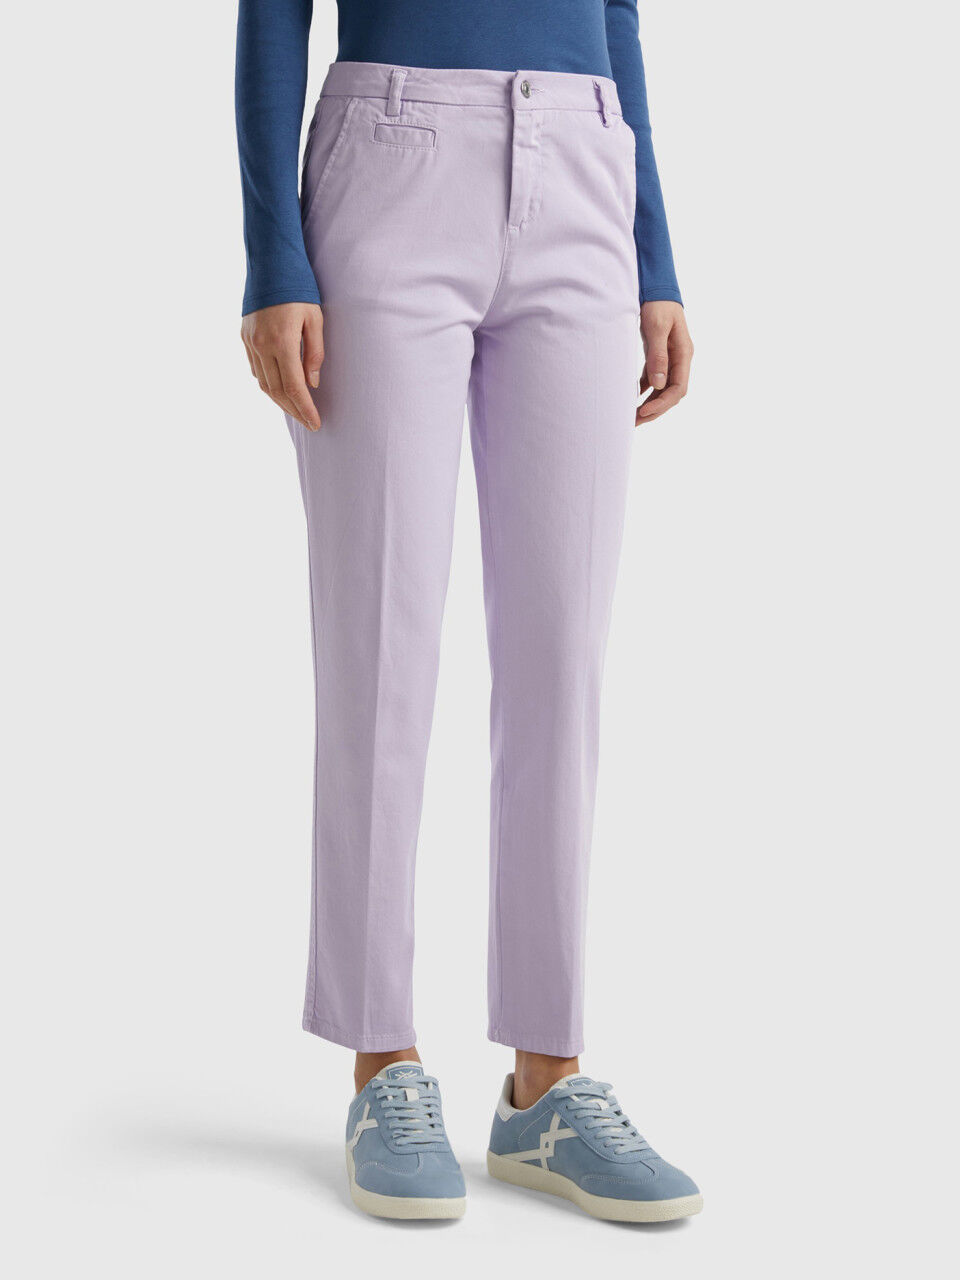 Buy Ecru Trousers & Pants for Women by W Online | Ajio.com